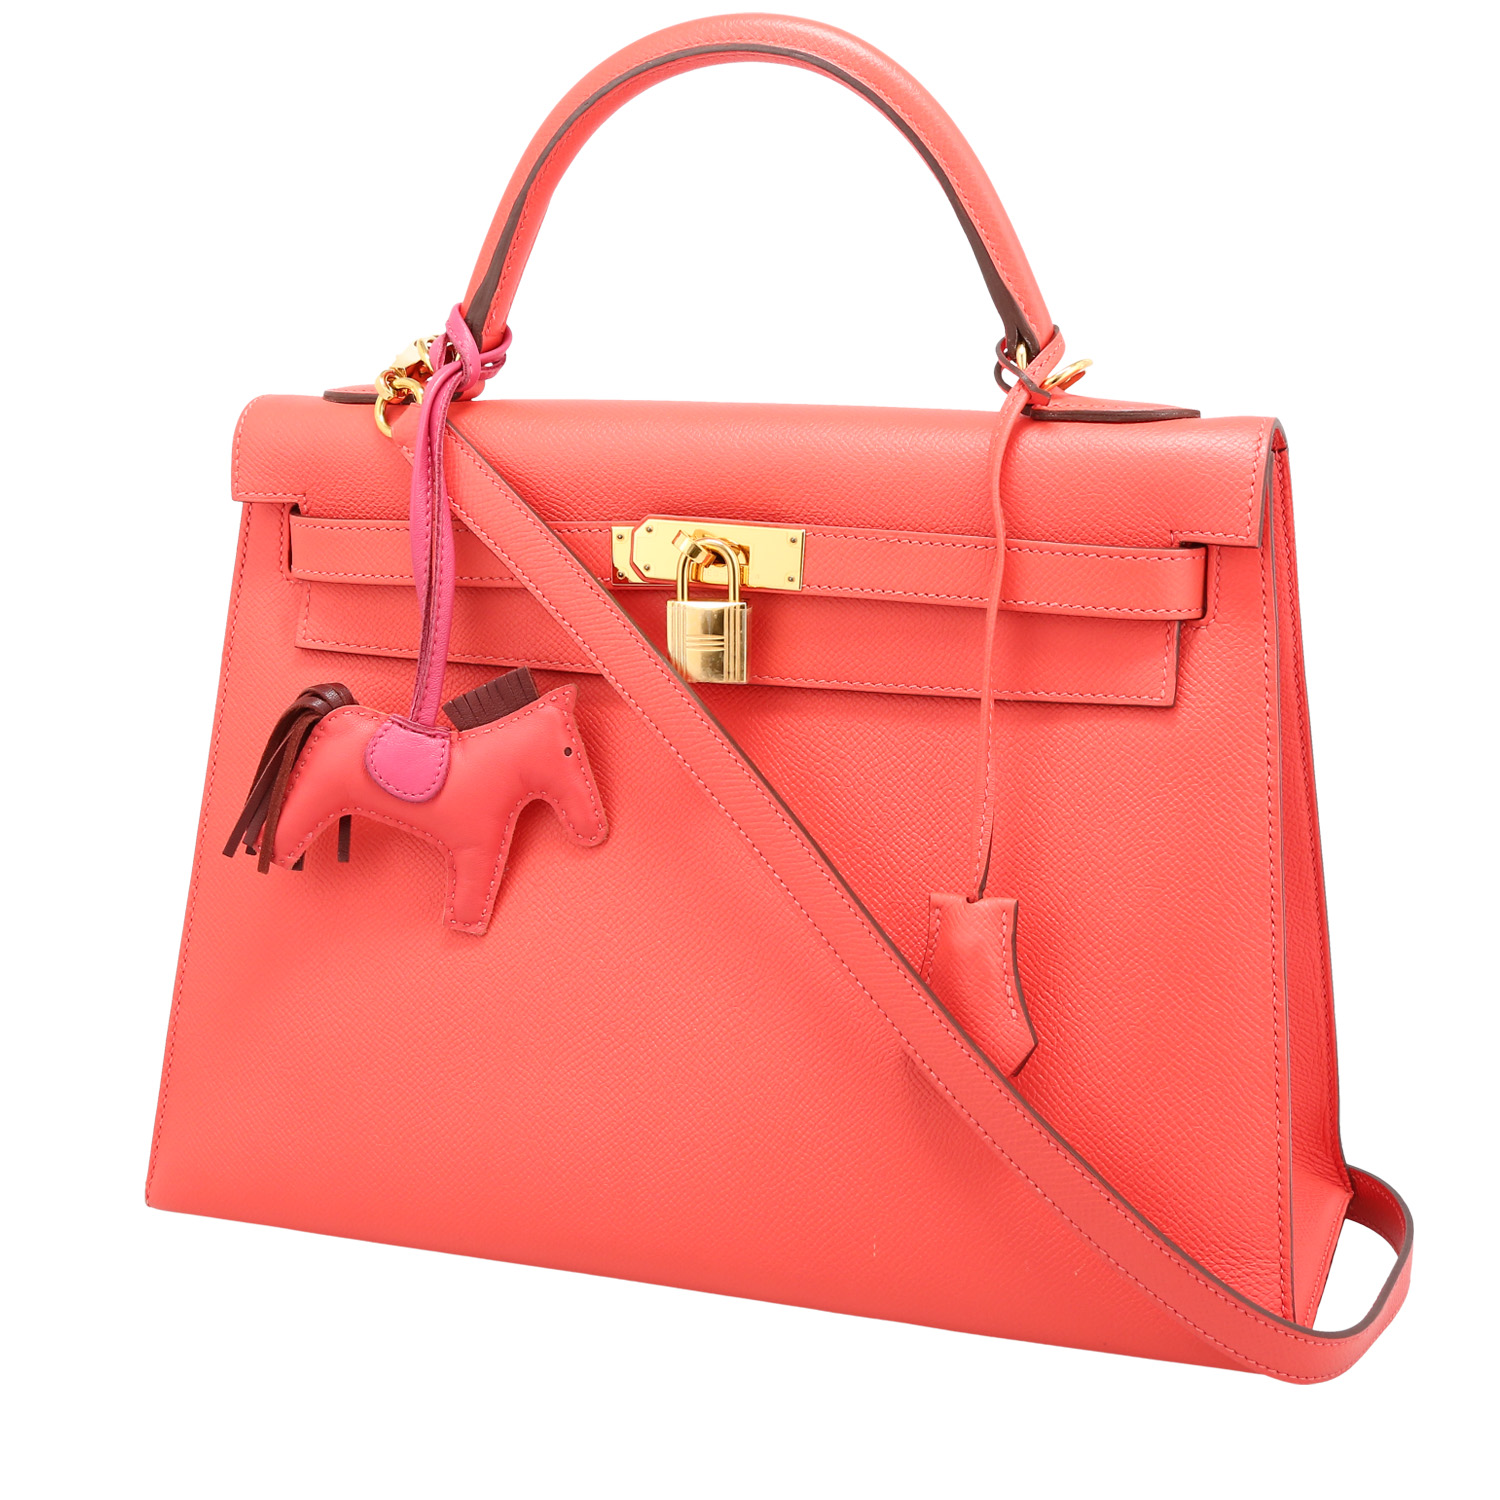 Hermes Kelly 32 cm handbag in pink Jaipur epsom leather - 00pp